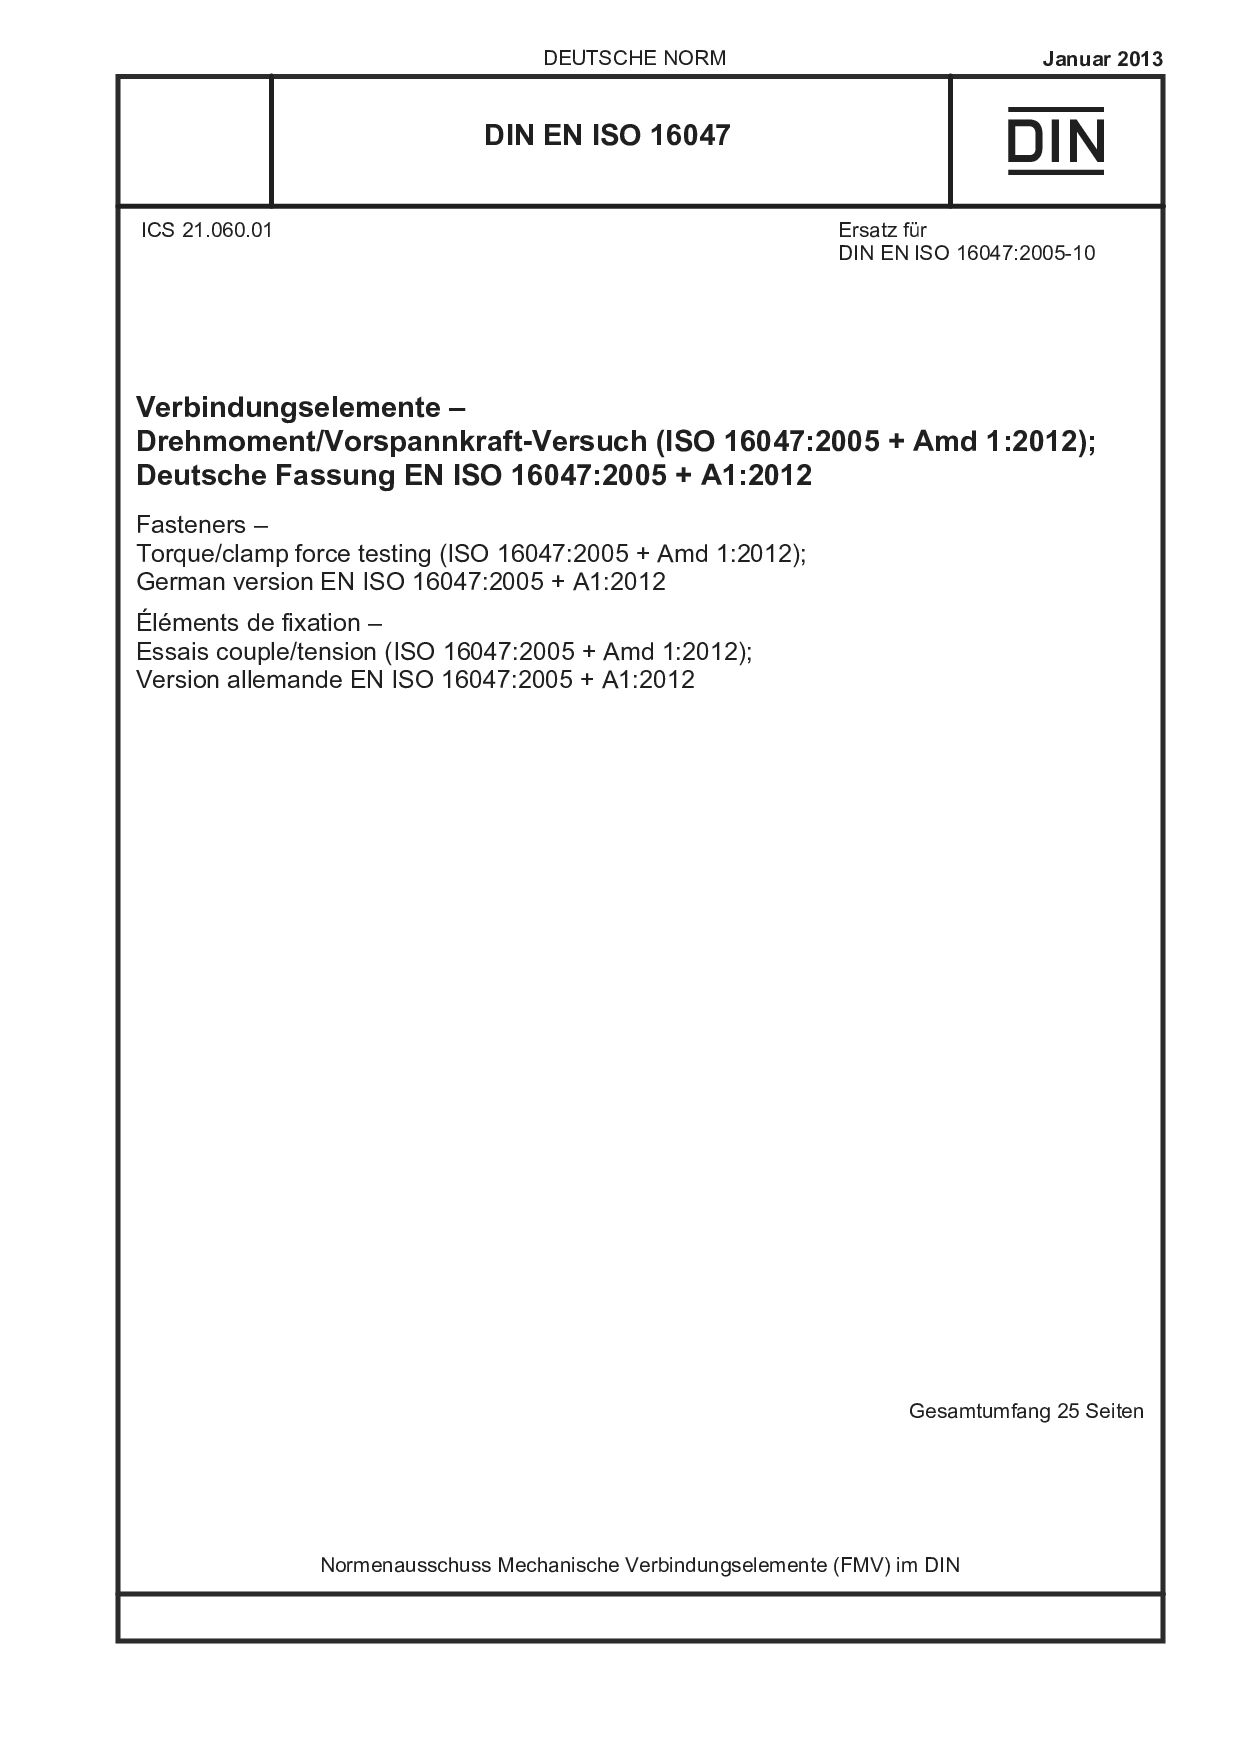 DIN EN ISO 16047:2013封面图